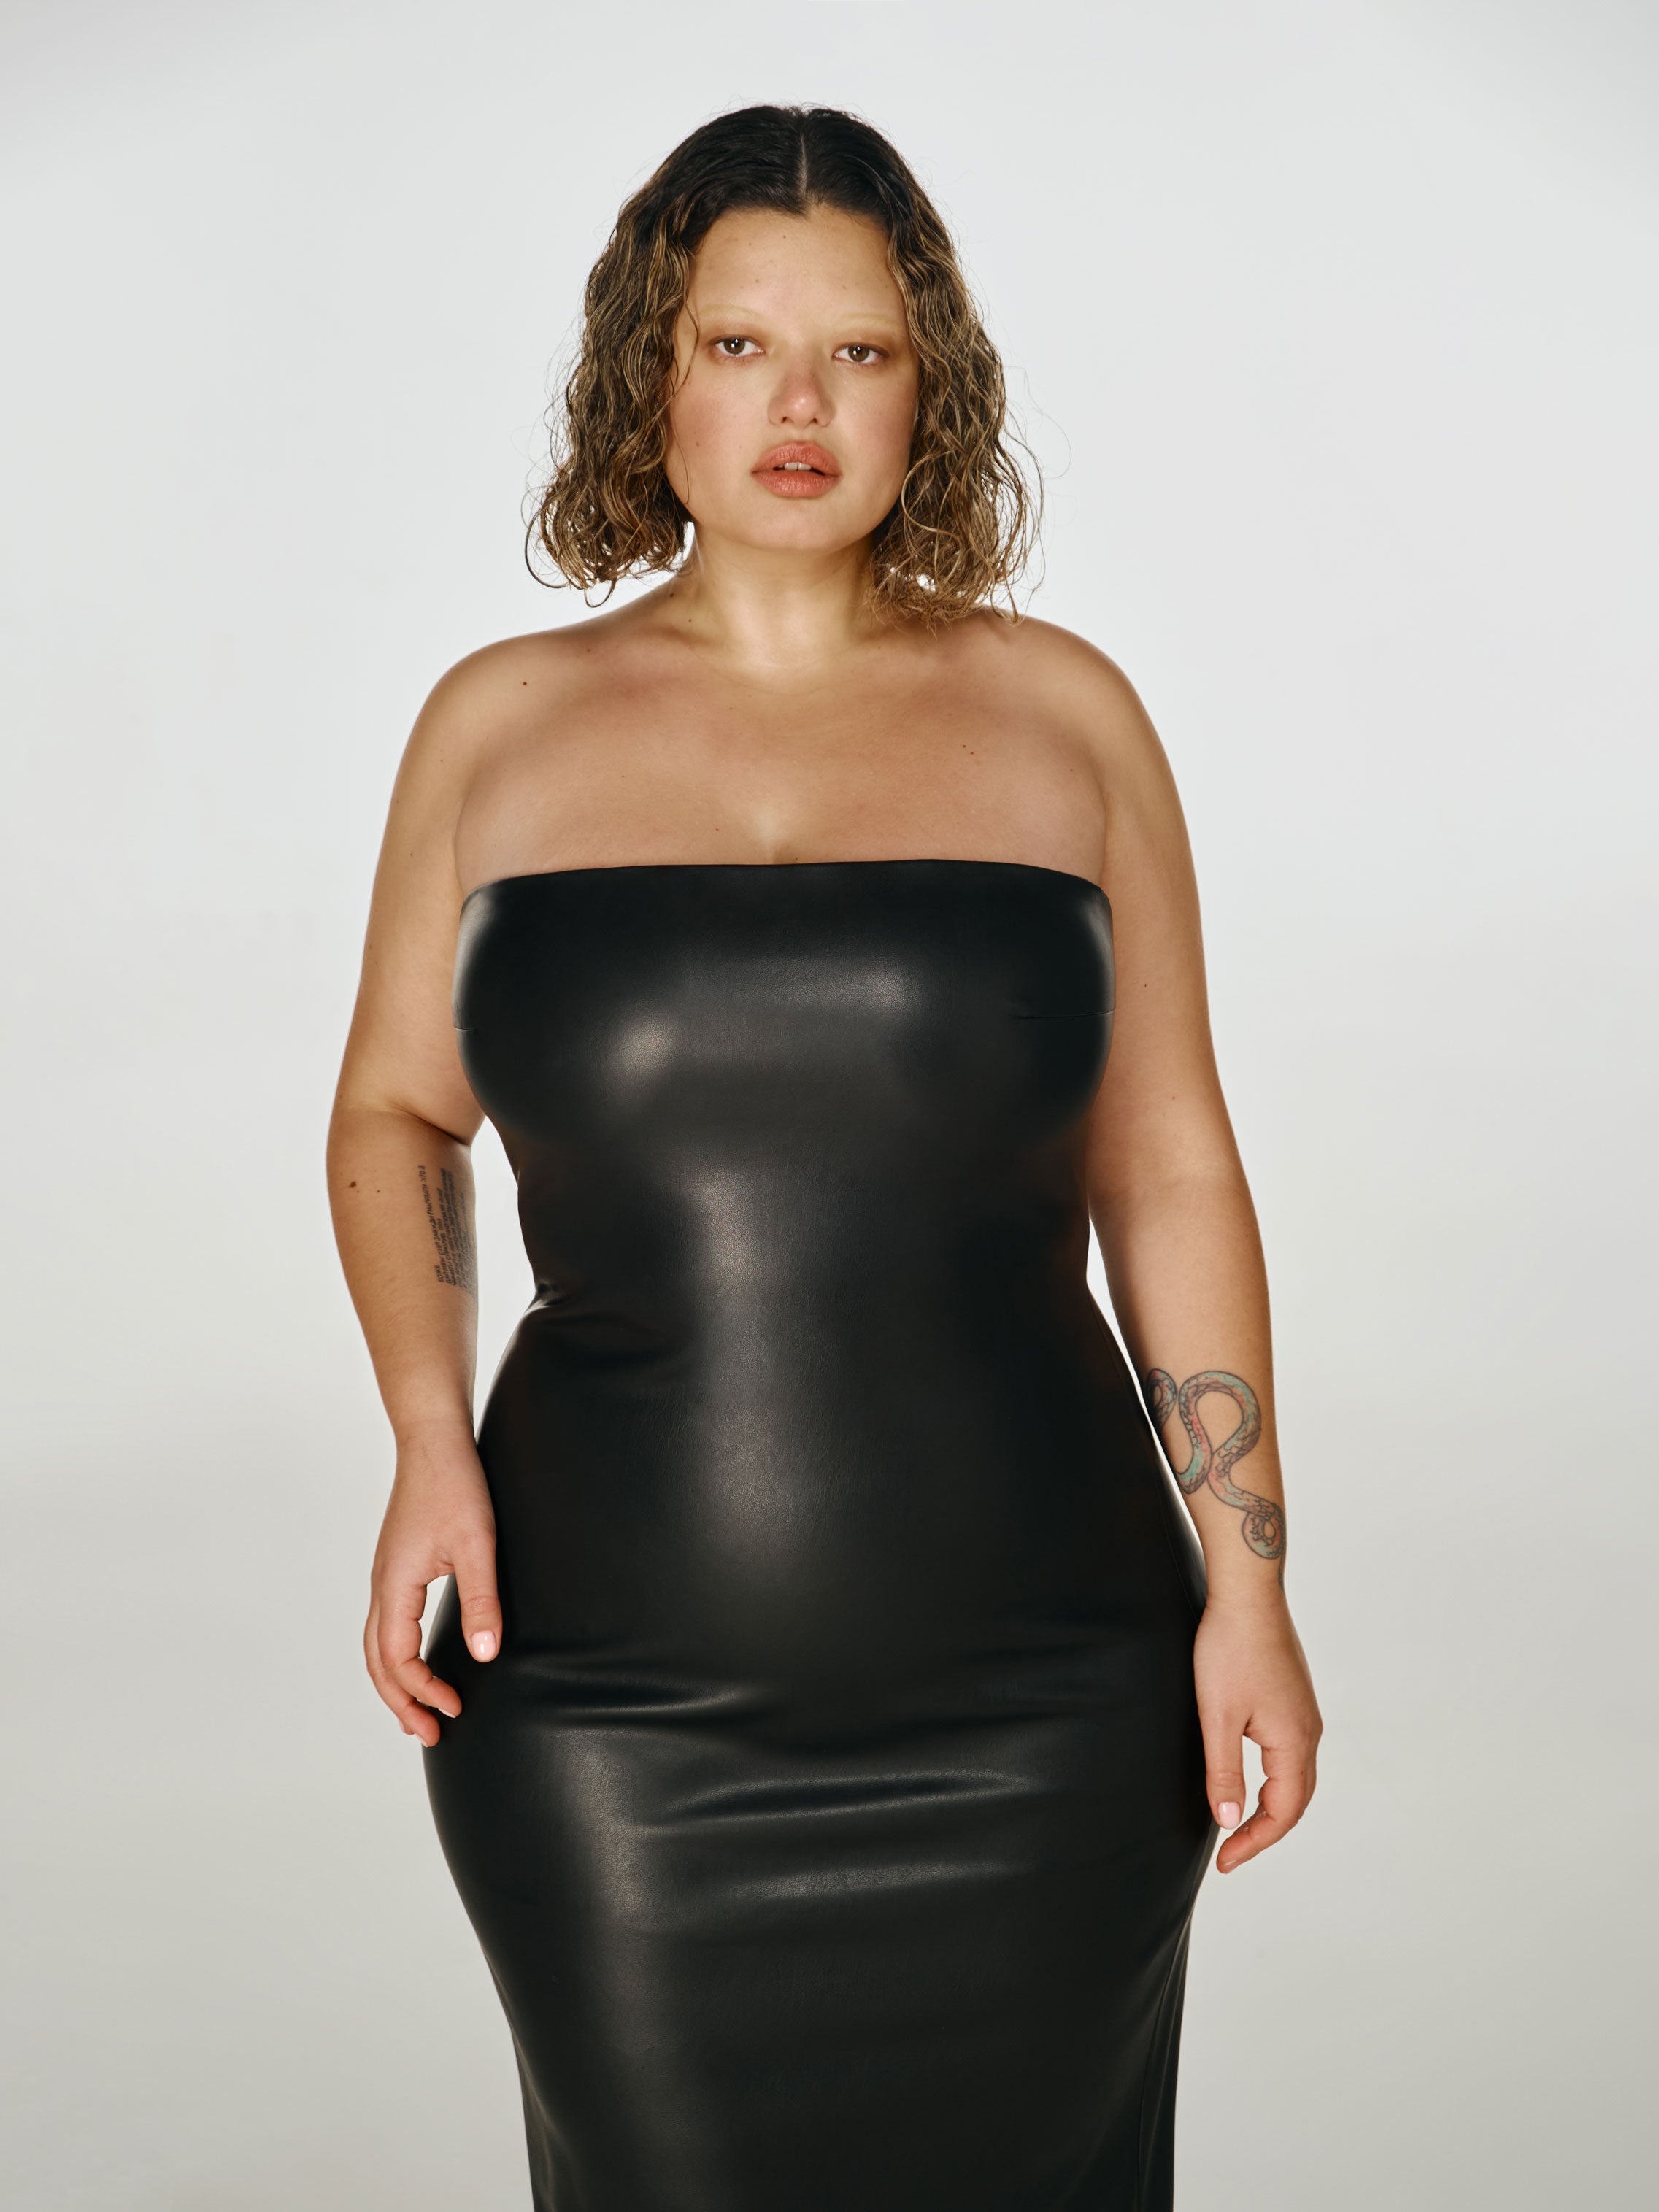 Medium full shot of a girl in a black vegan leather tube dress